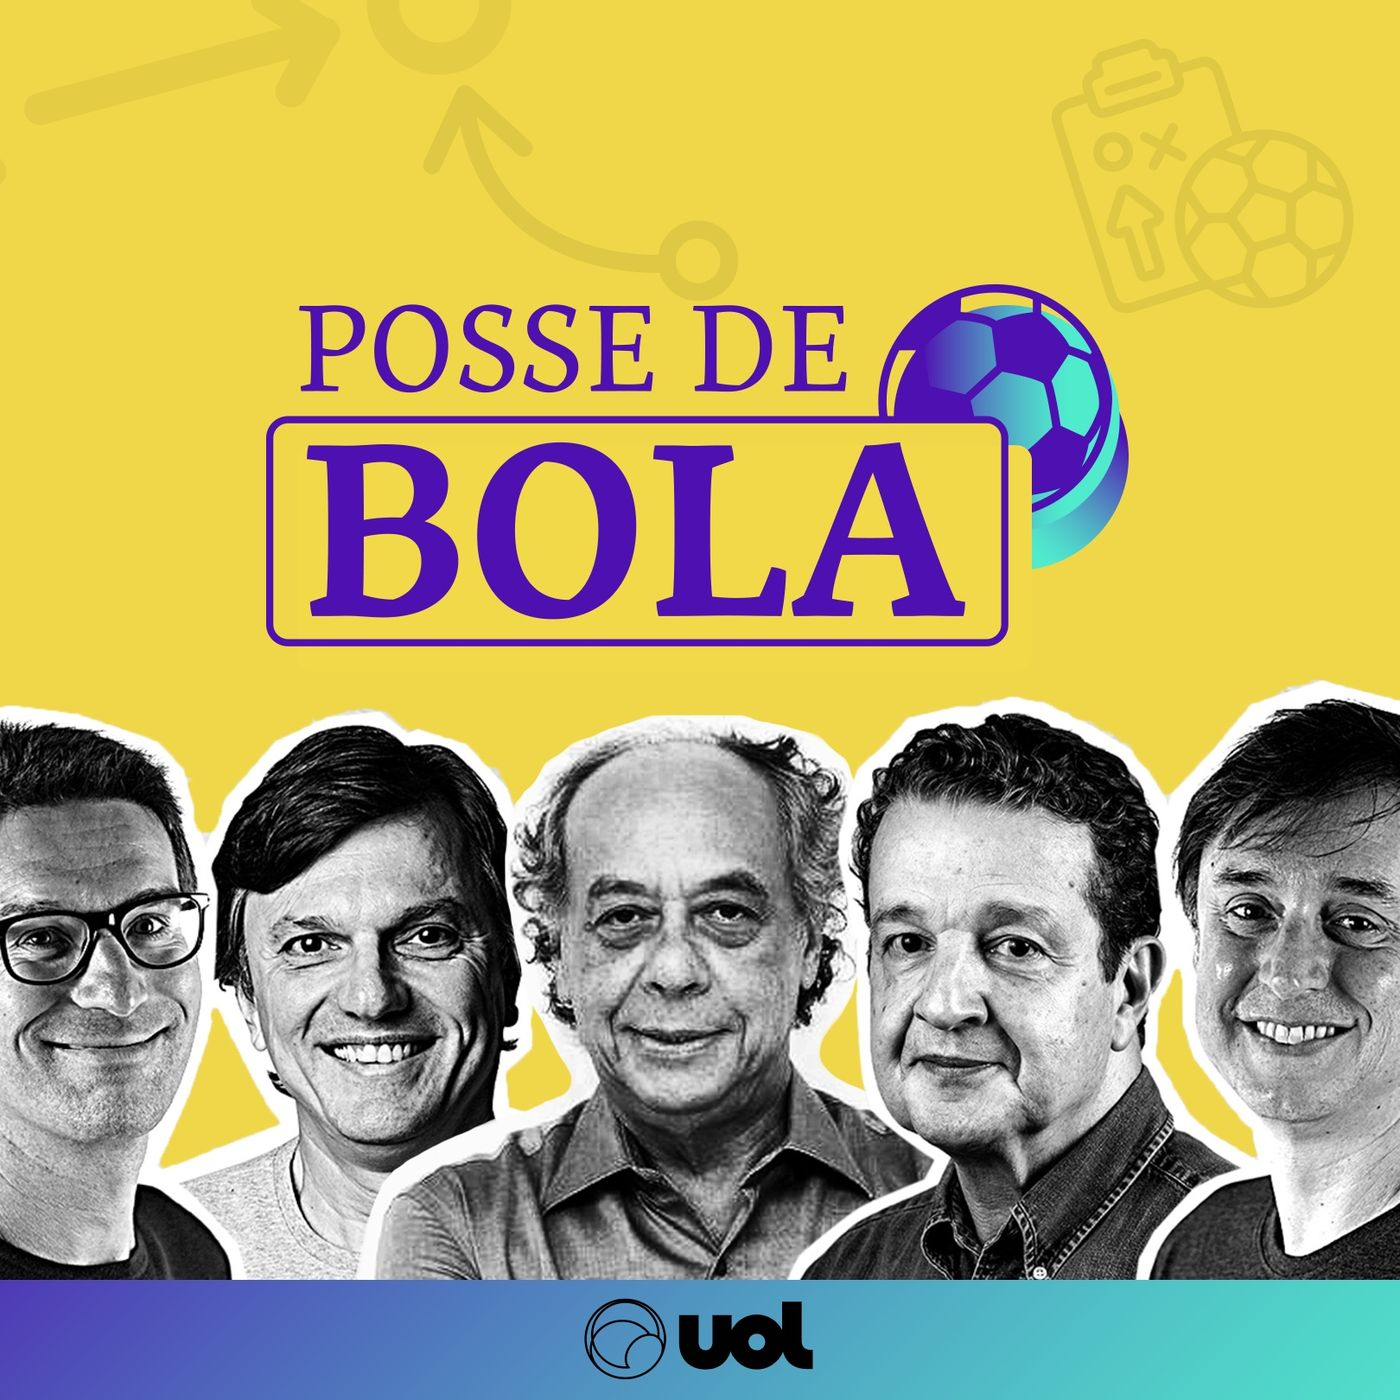 Fala, Maurão: as chances dos paulistas no Brasileiro